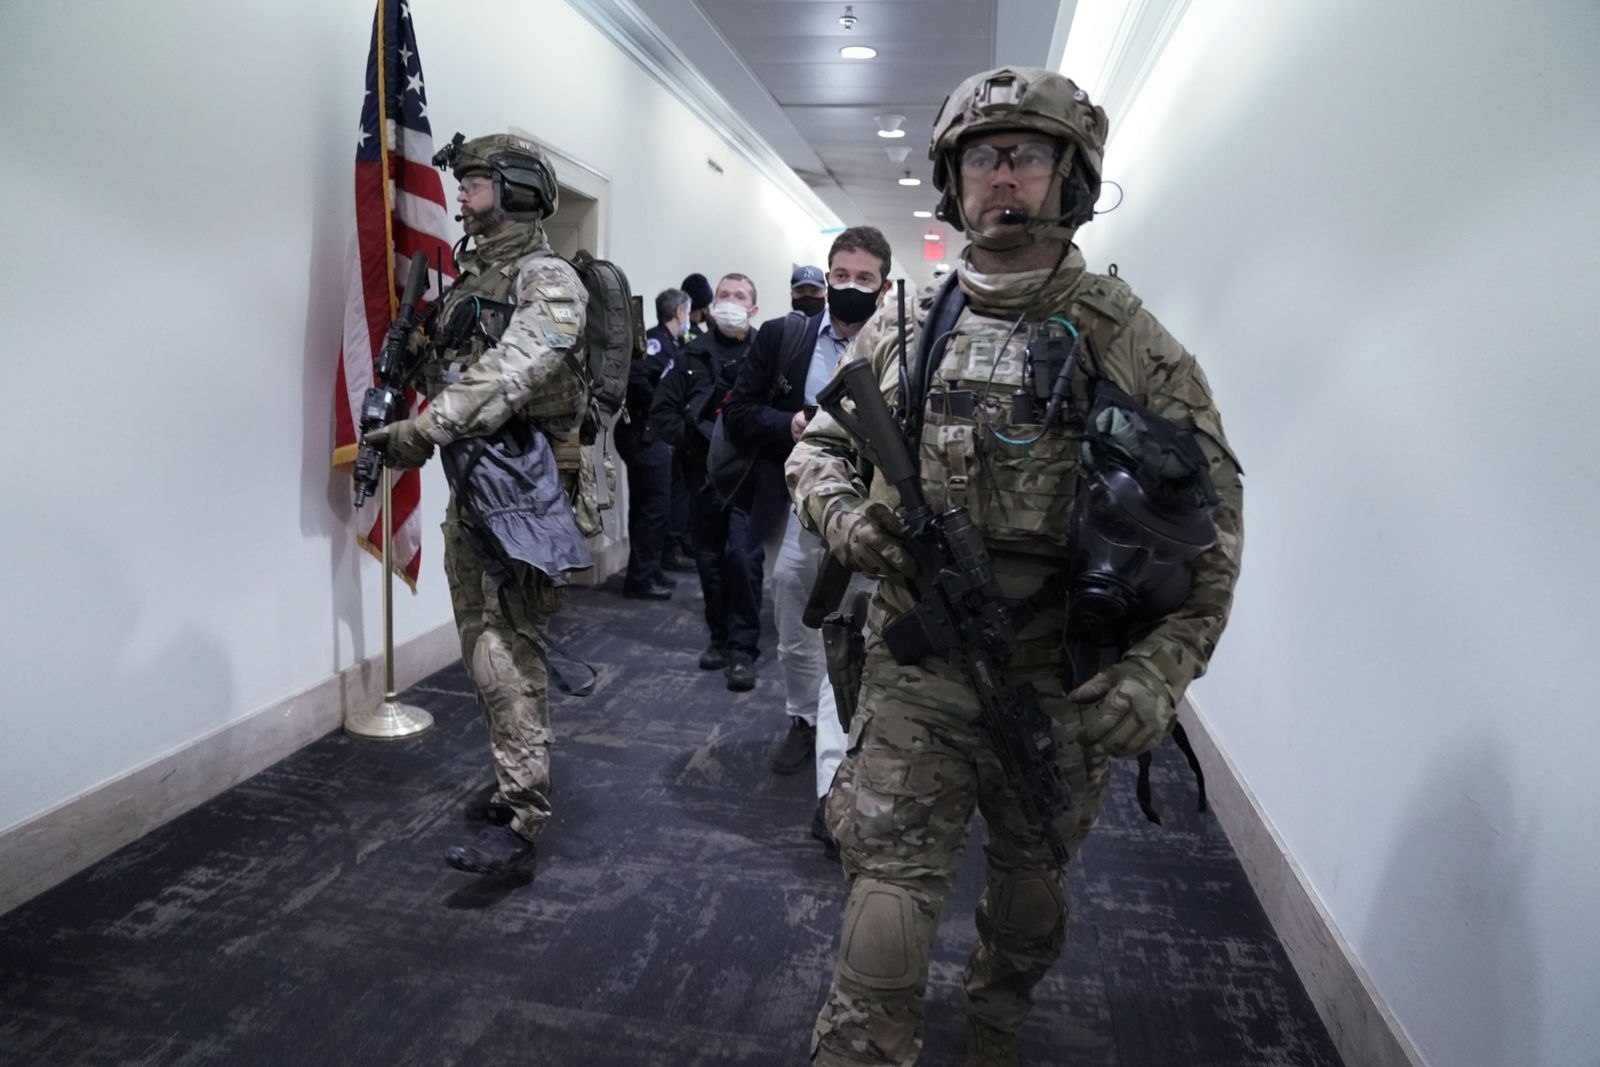 عنصران من قوة خاصة تابعة لمكتب التحقيقات الفيدرالي (إف بي آي) في مبنى الكونغرس بعد اقتحامه - 6 يناير 2021 - Bloomberg